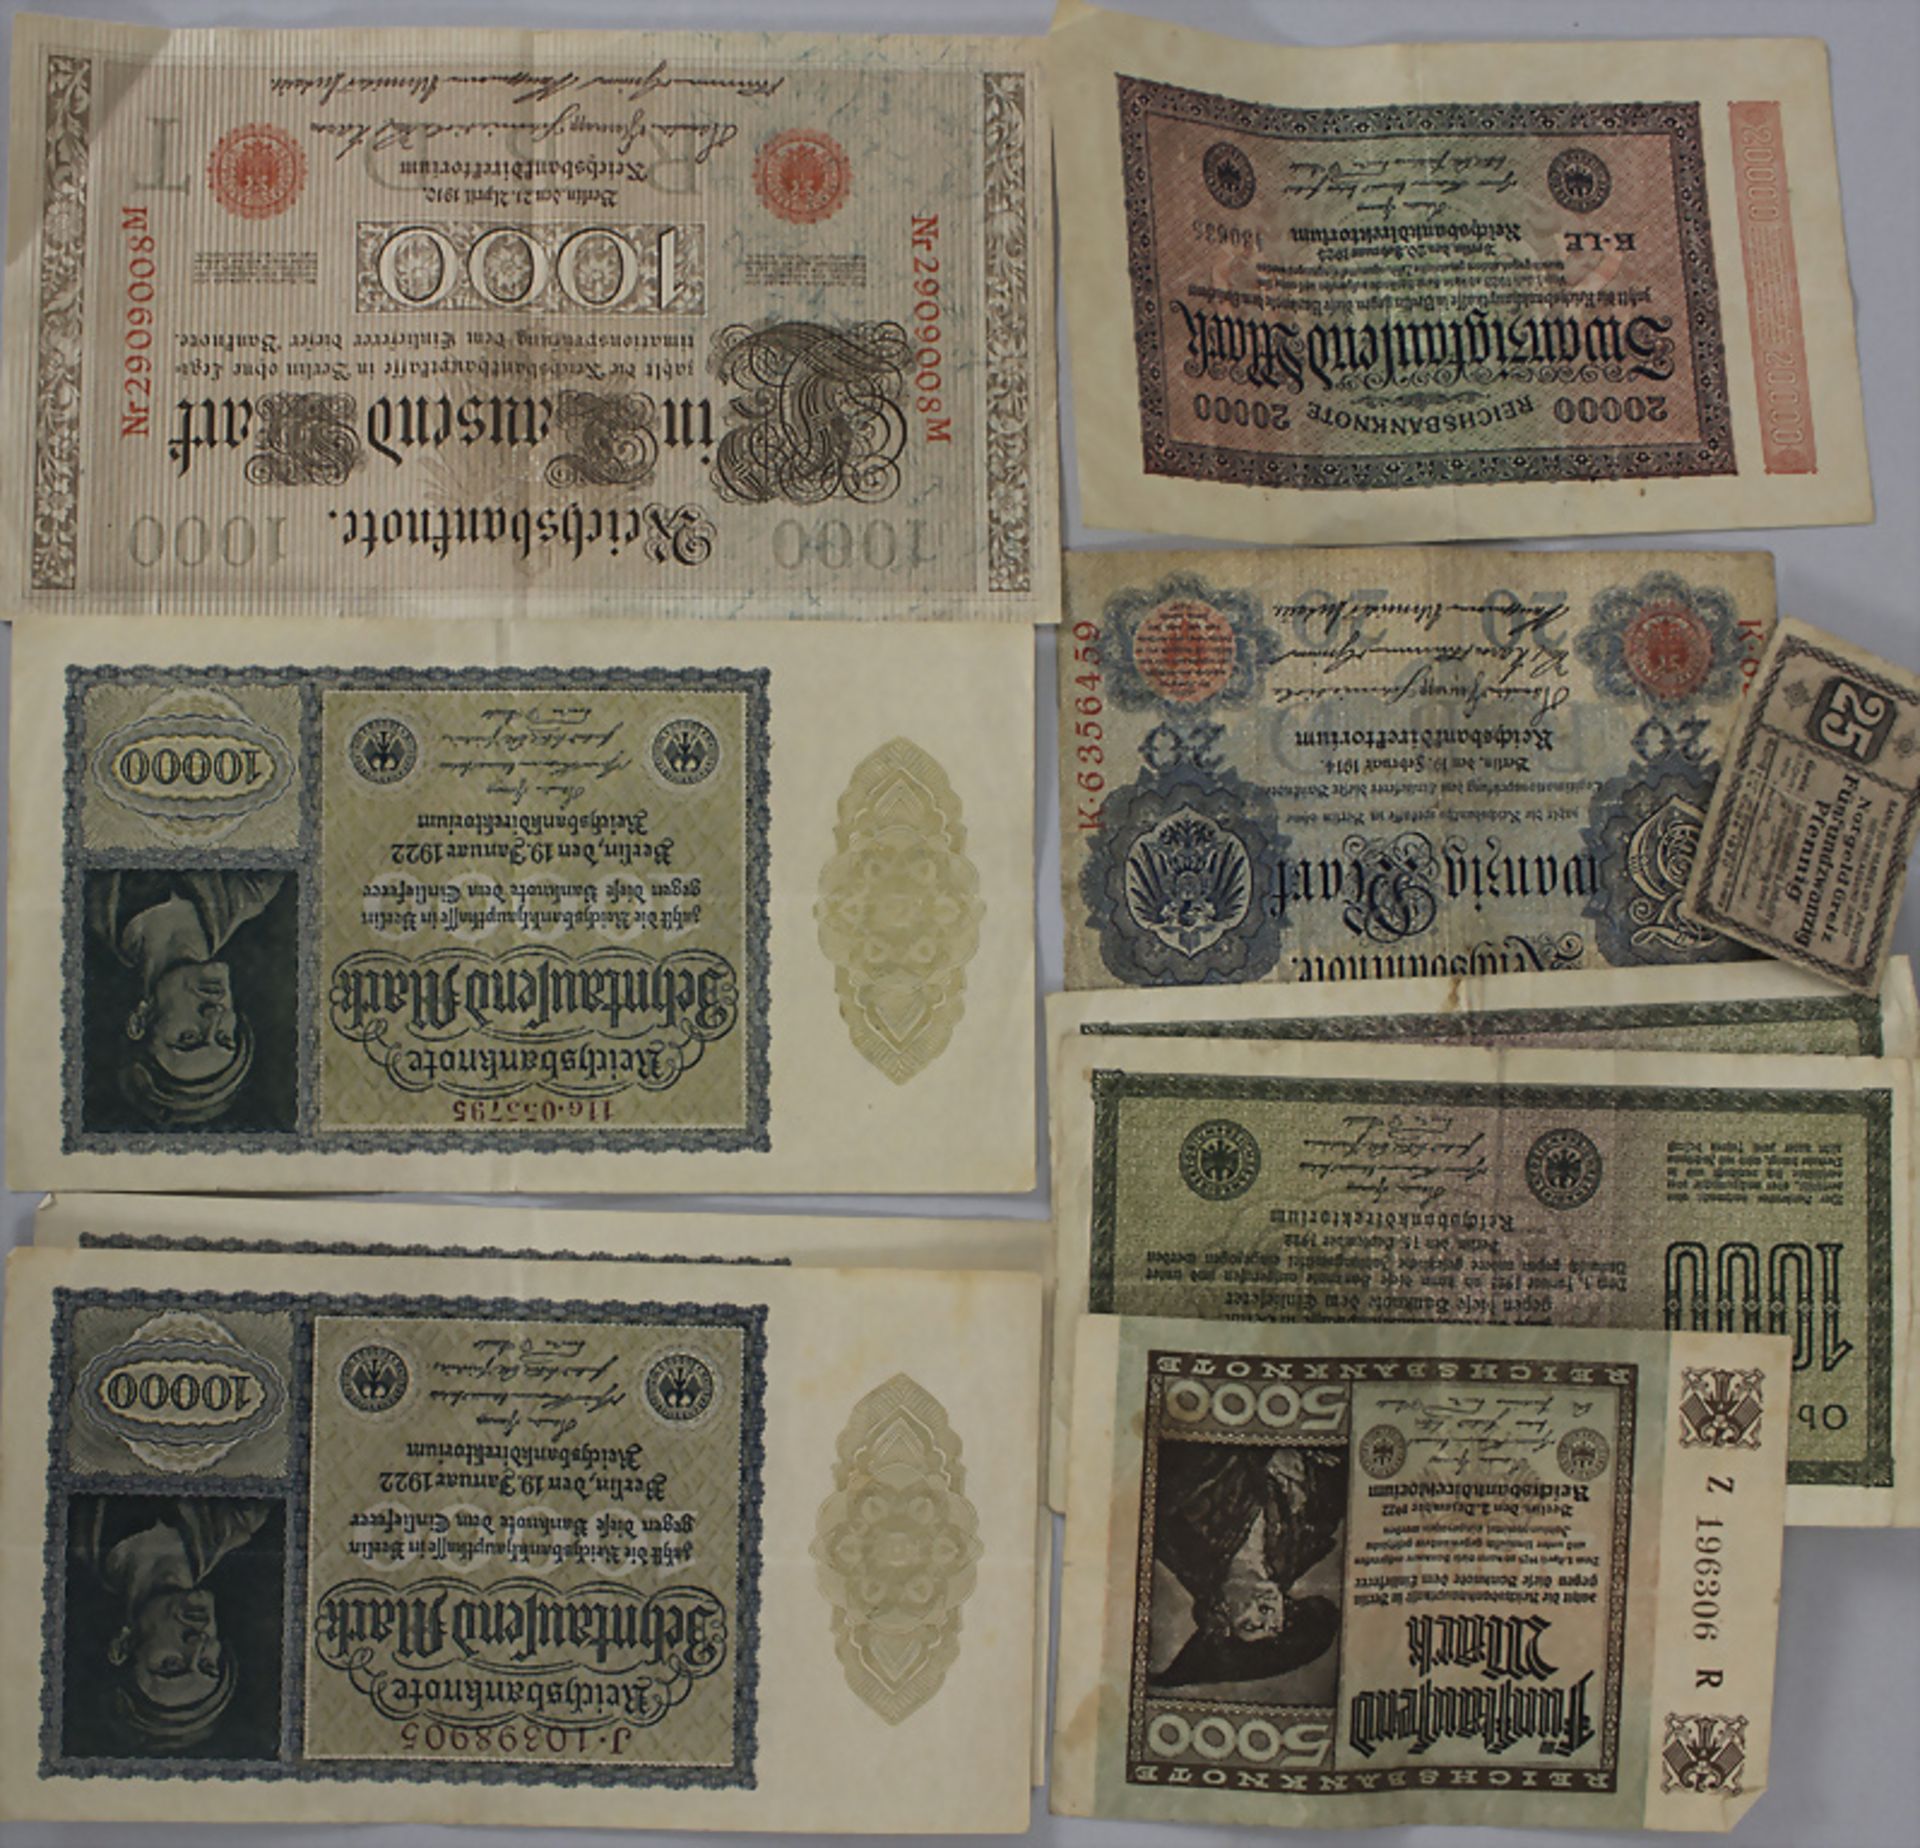 Sammlung deutscher Banknoten / A collection of German banknotes